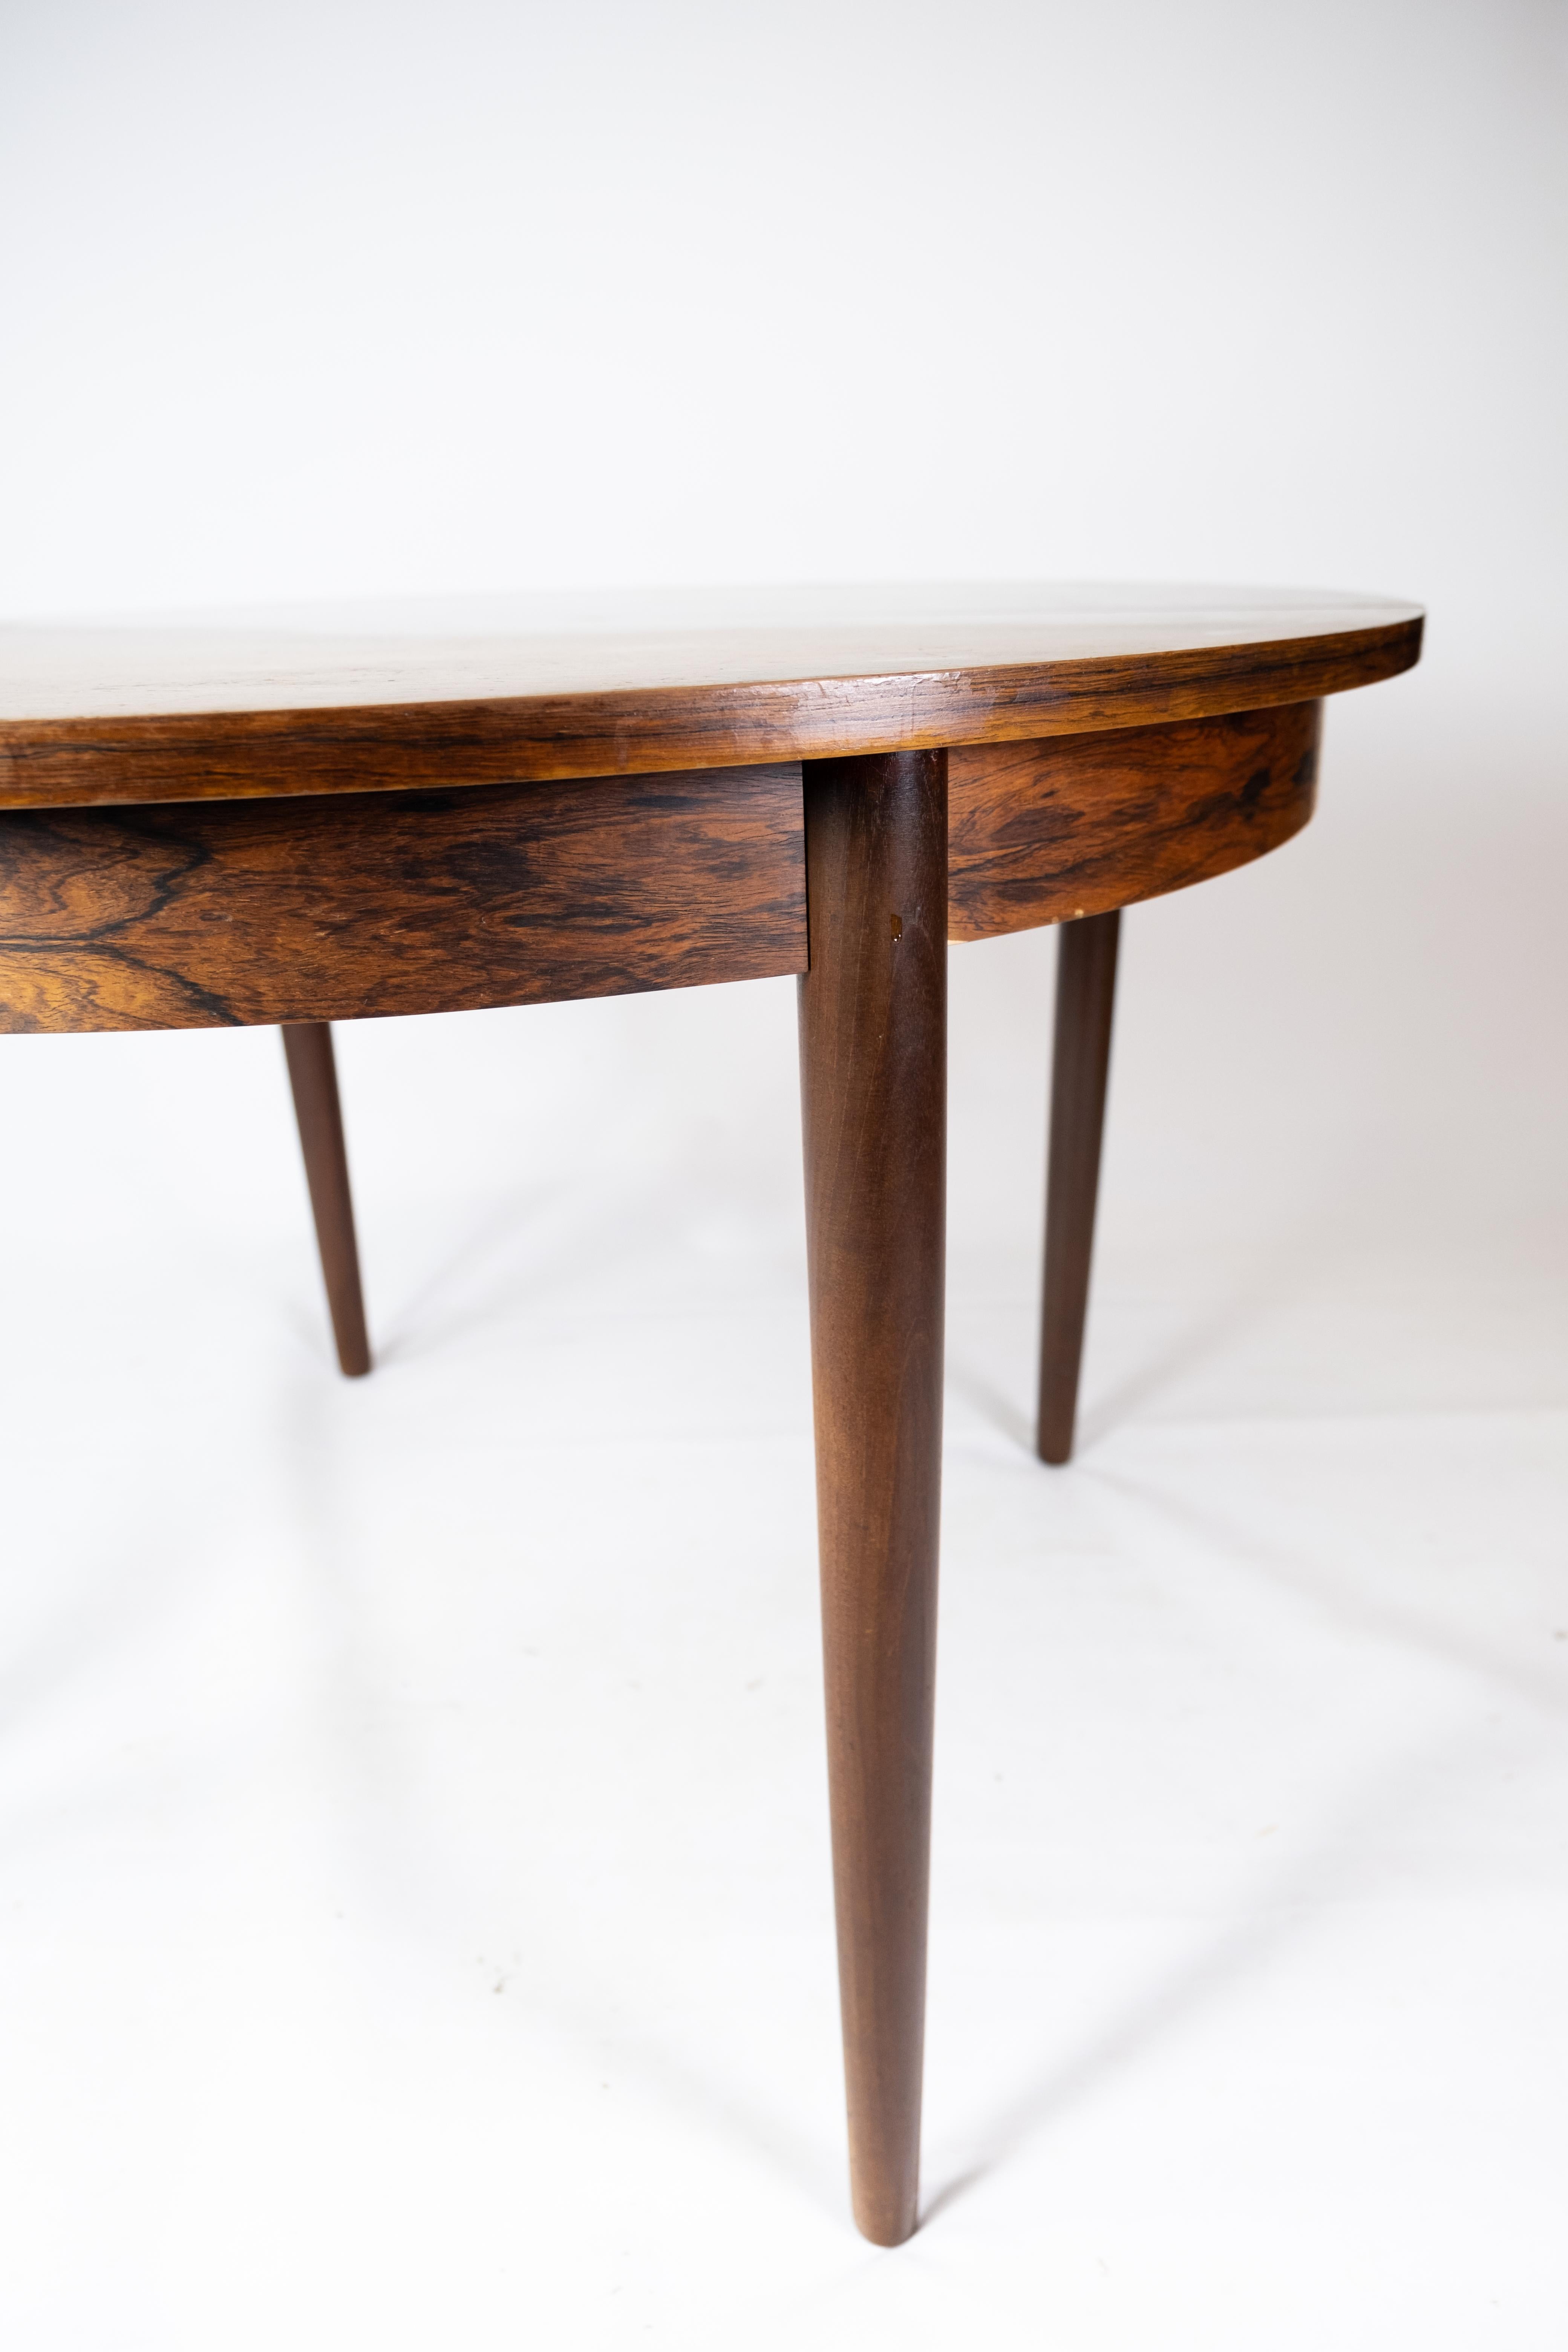 Cette table de salle à manger en bois de rose des années 1960 est un exemple emblématique du mobilier danois. La table est créée avec soin et expertise, et son esthétique intemporelle s'intègre parfaitement à une décoration moderne.

La couleur